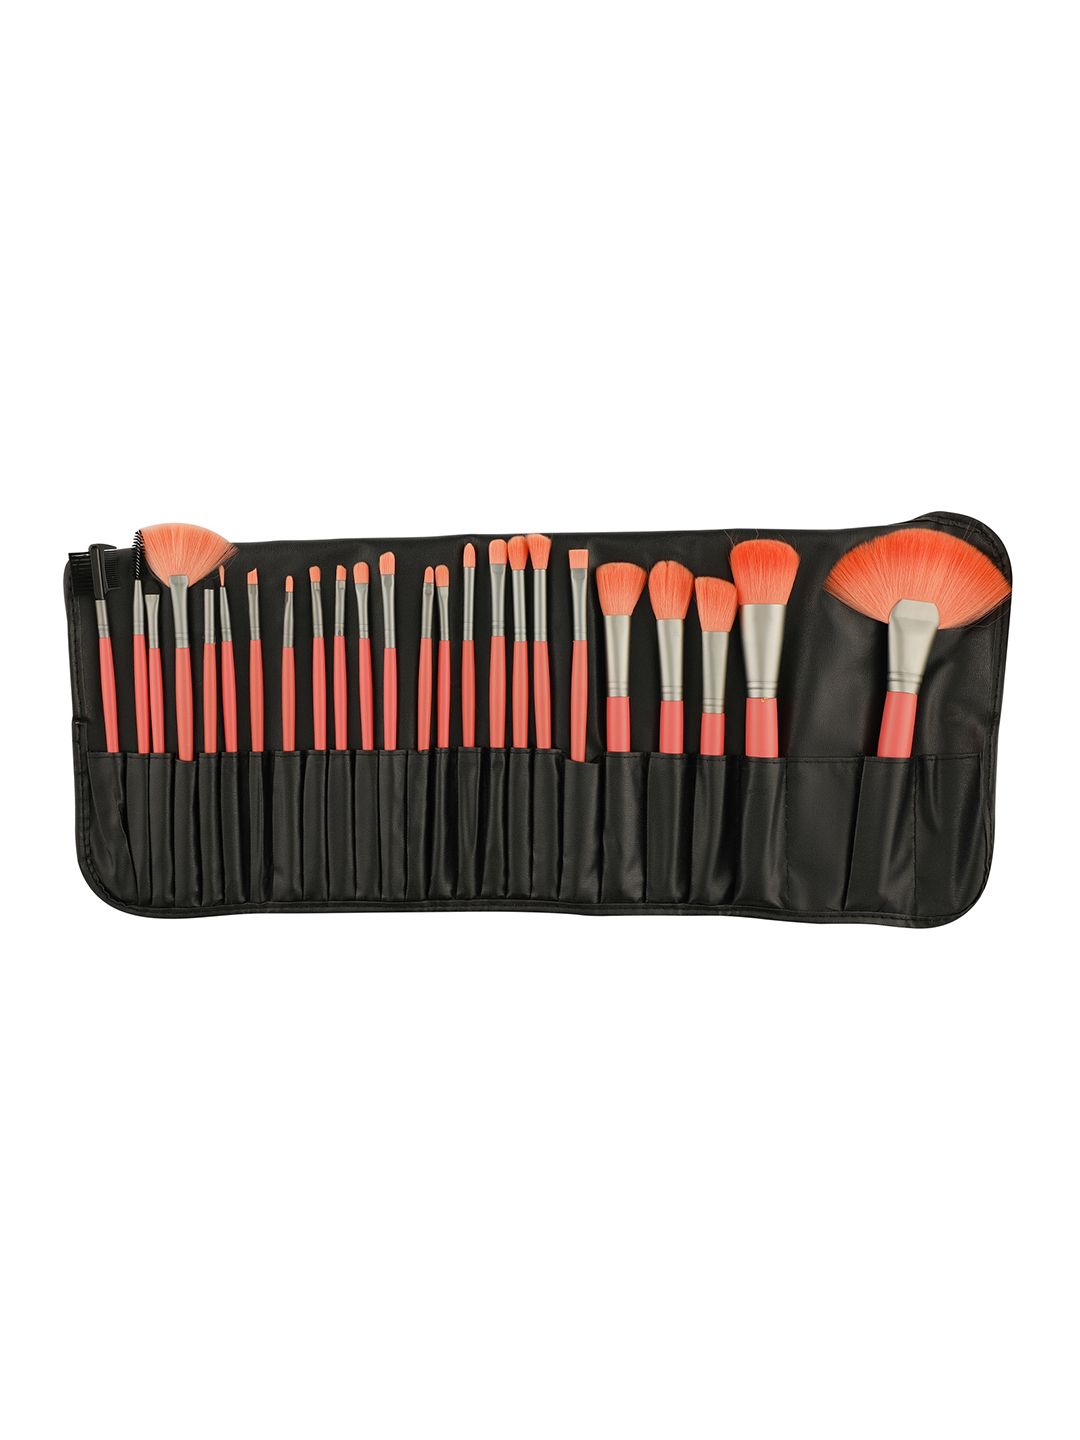 Beaute Secrets 24pcs Premium Cosmetic Makeup Brush Set Price in India